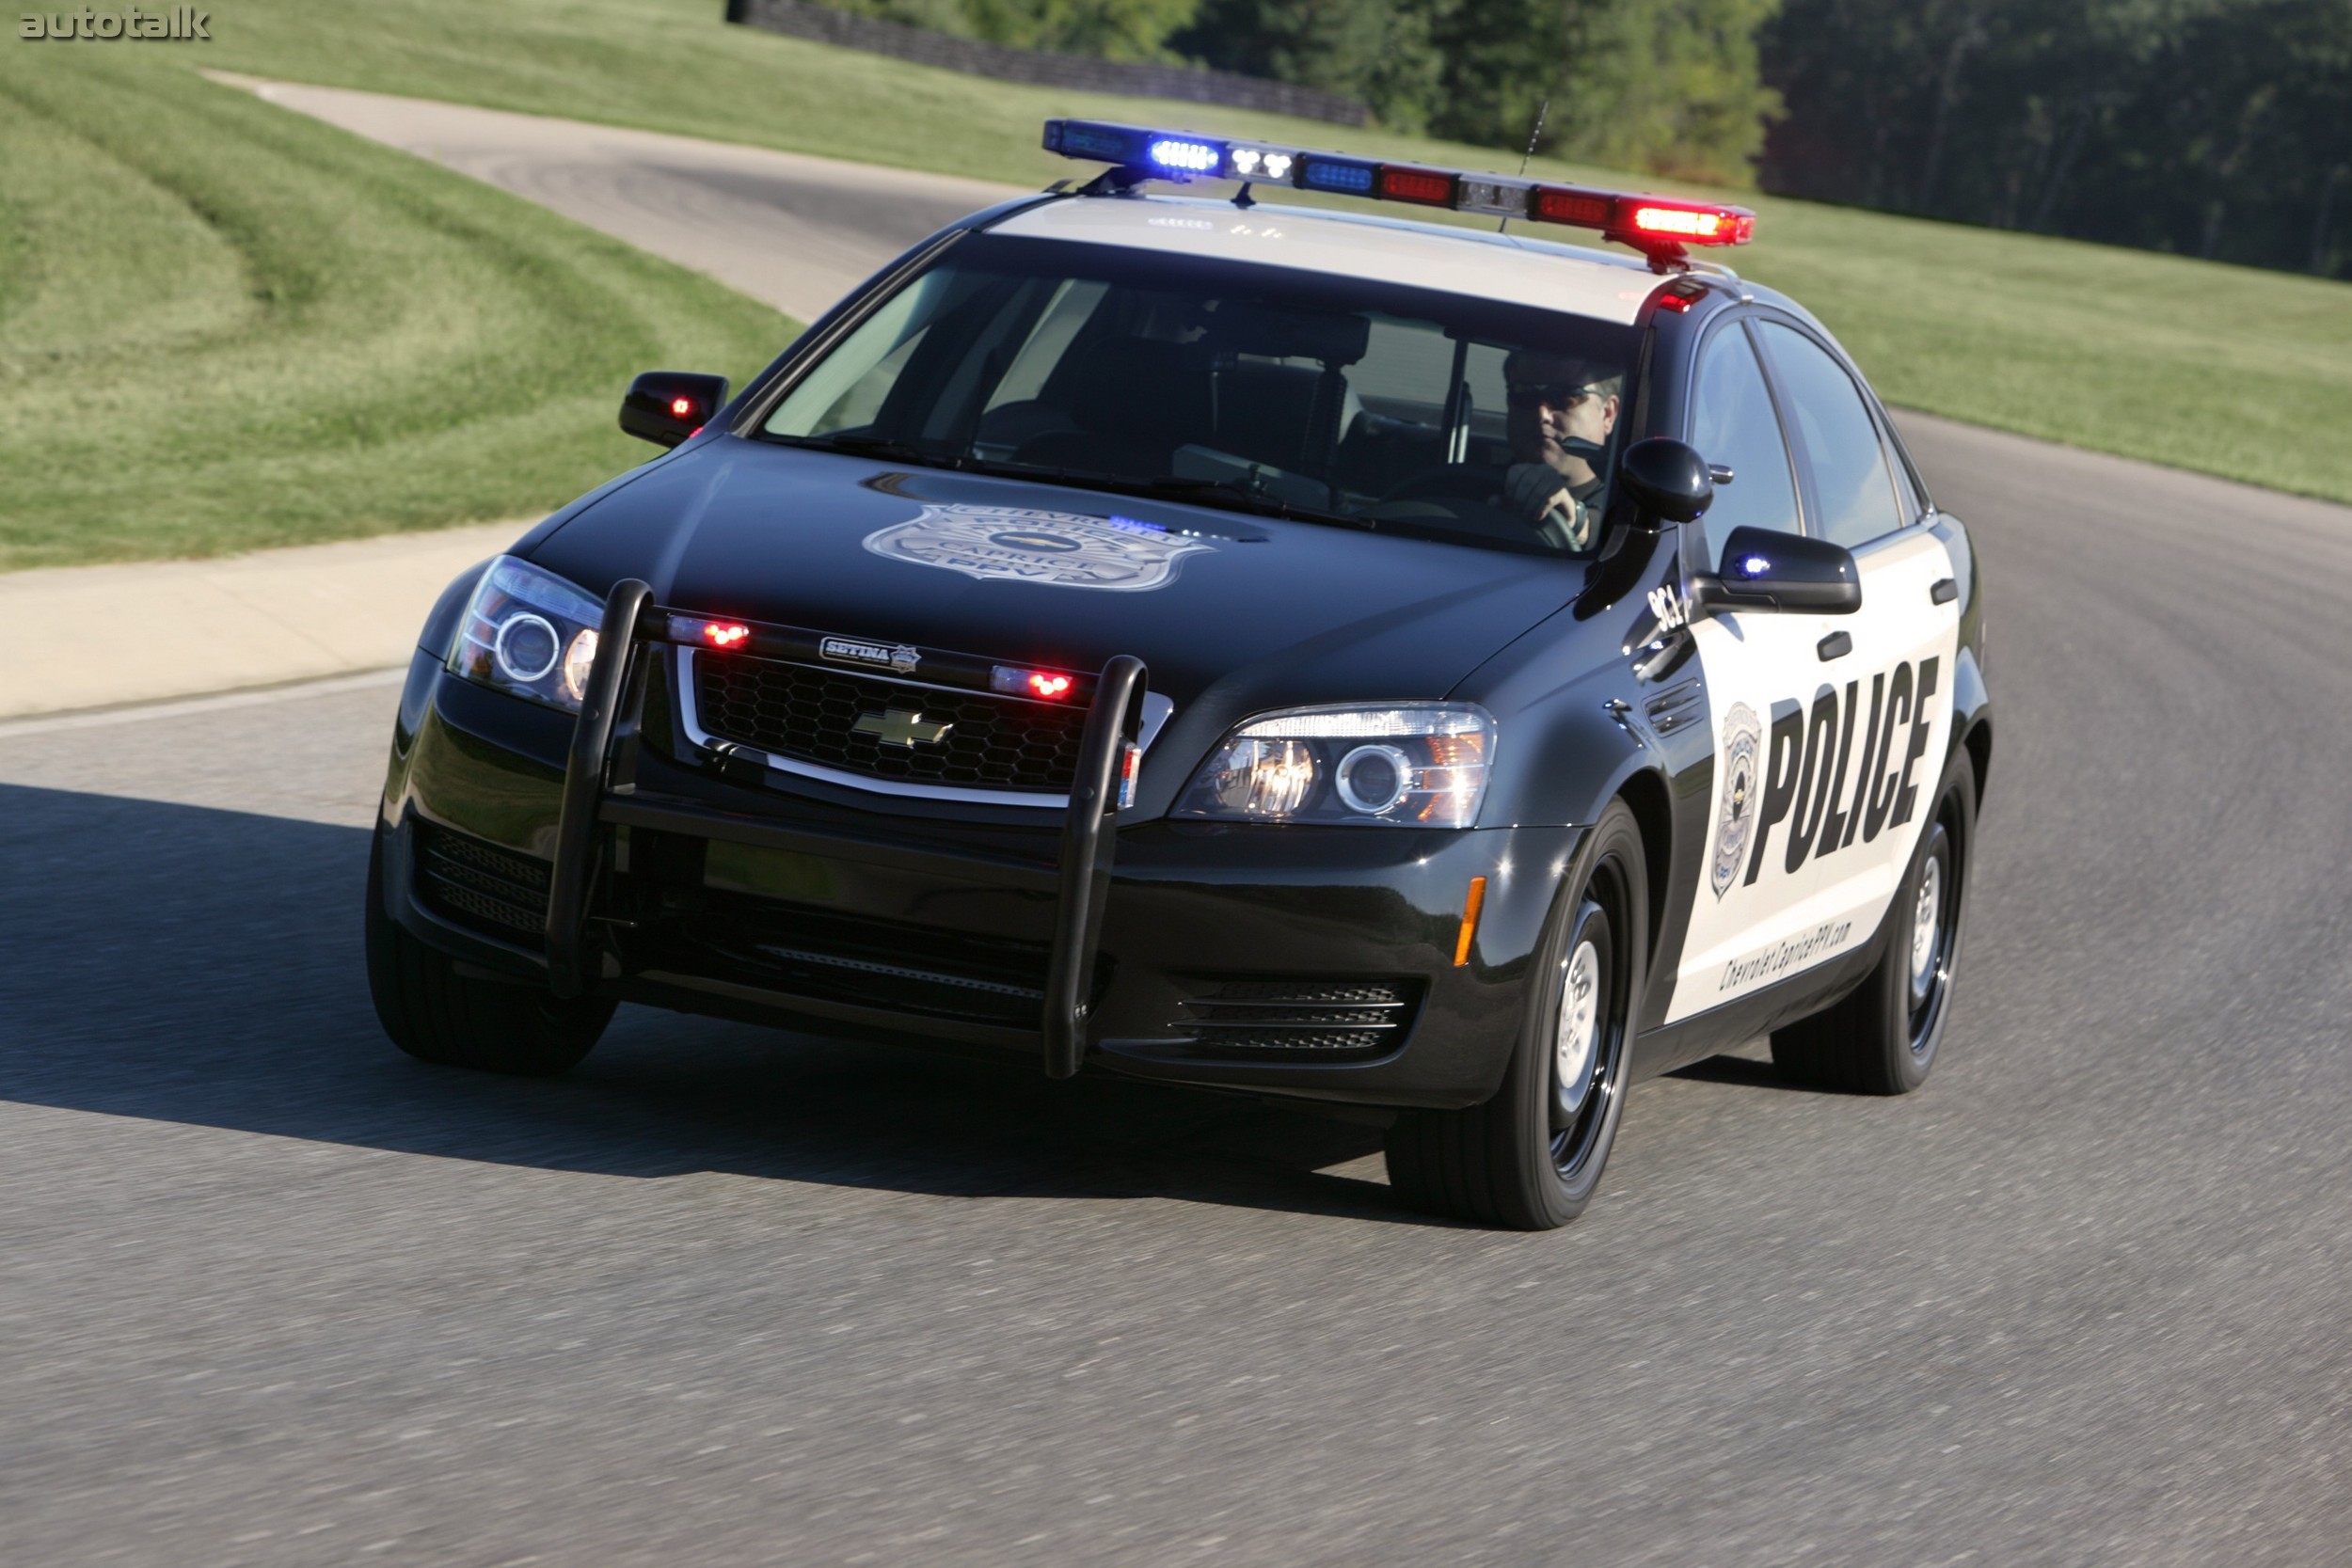 Открой полицейскую машину. Chevrolet Caprice Police 2010. Chevrolet Caprice 2006 Police. Chevrolet Caprice 2015 Police. Шевроле Каприс полиции США.